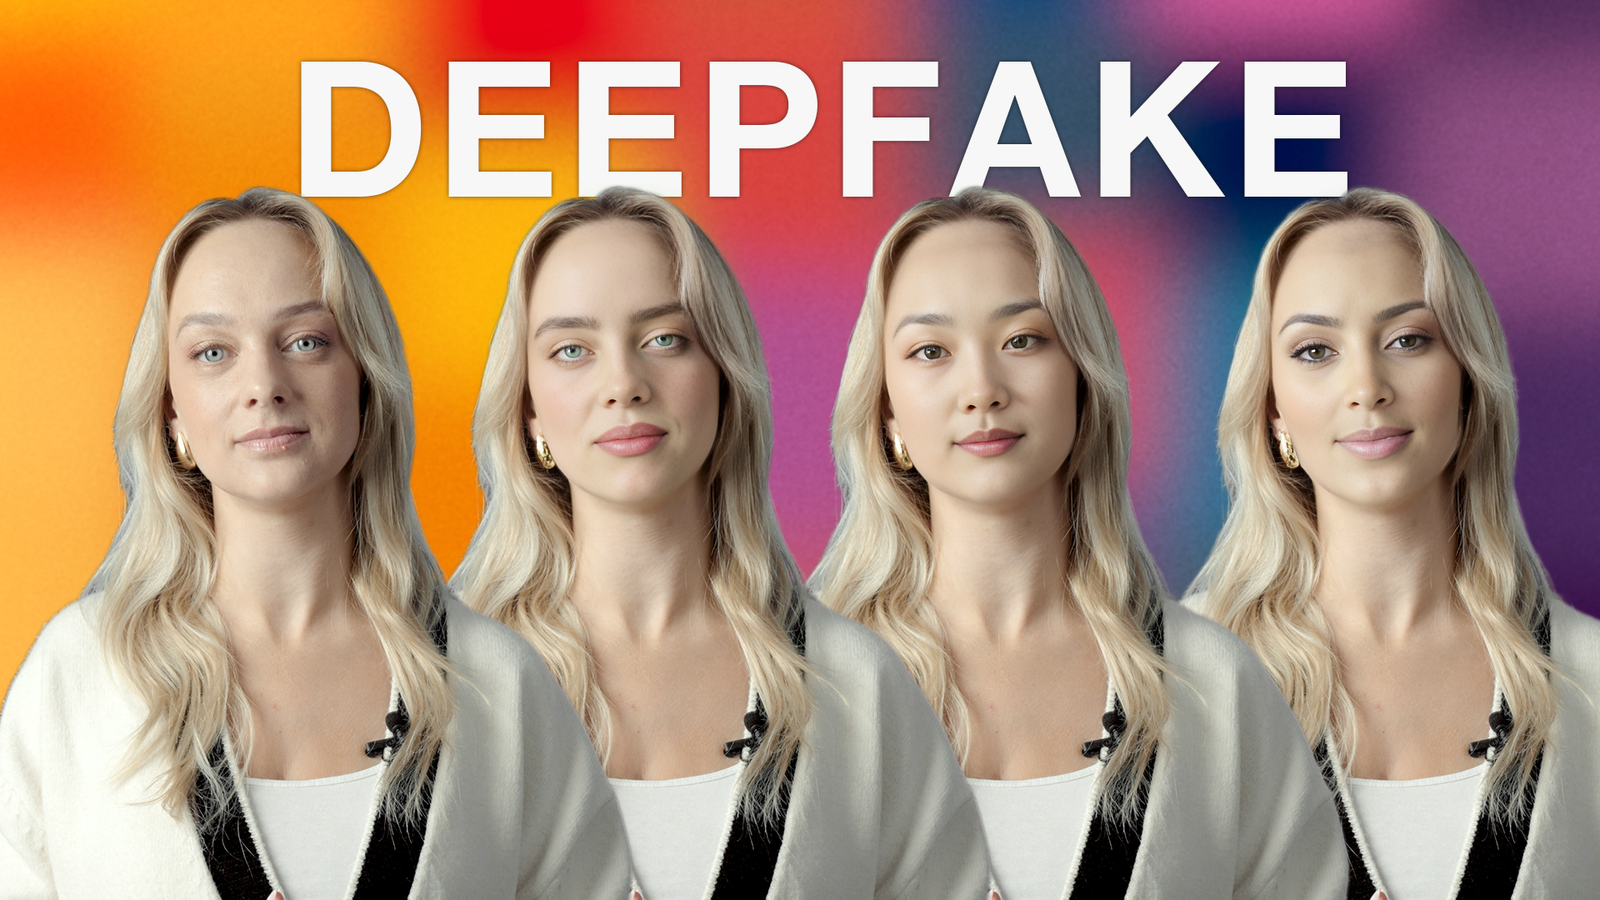 Melu mednieki: Deepfake